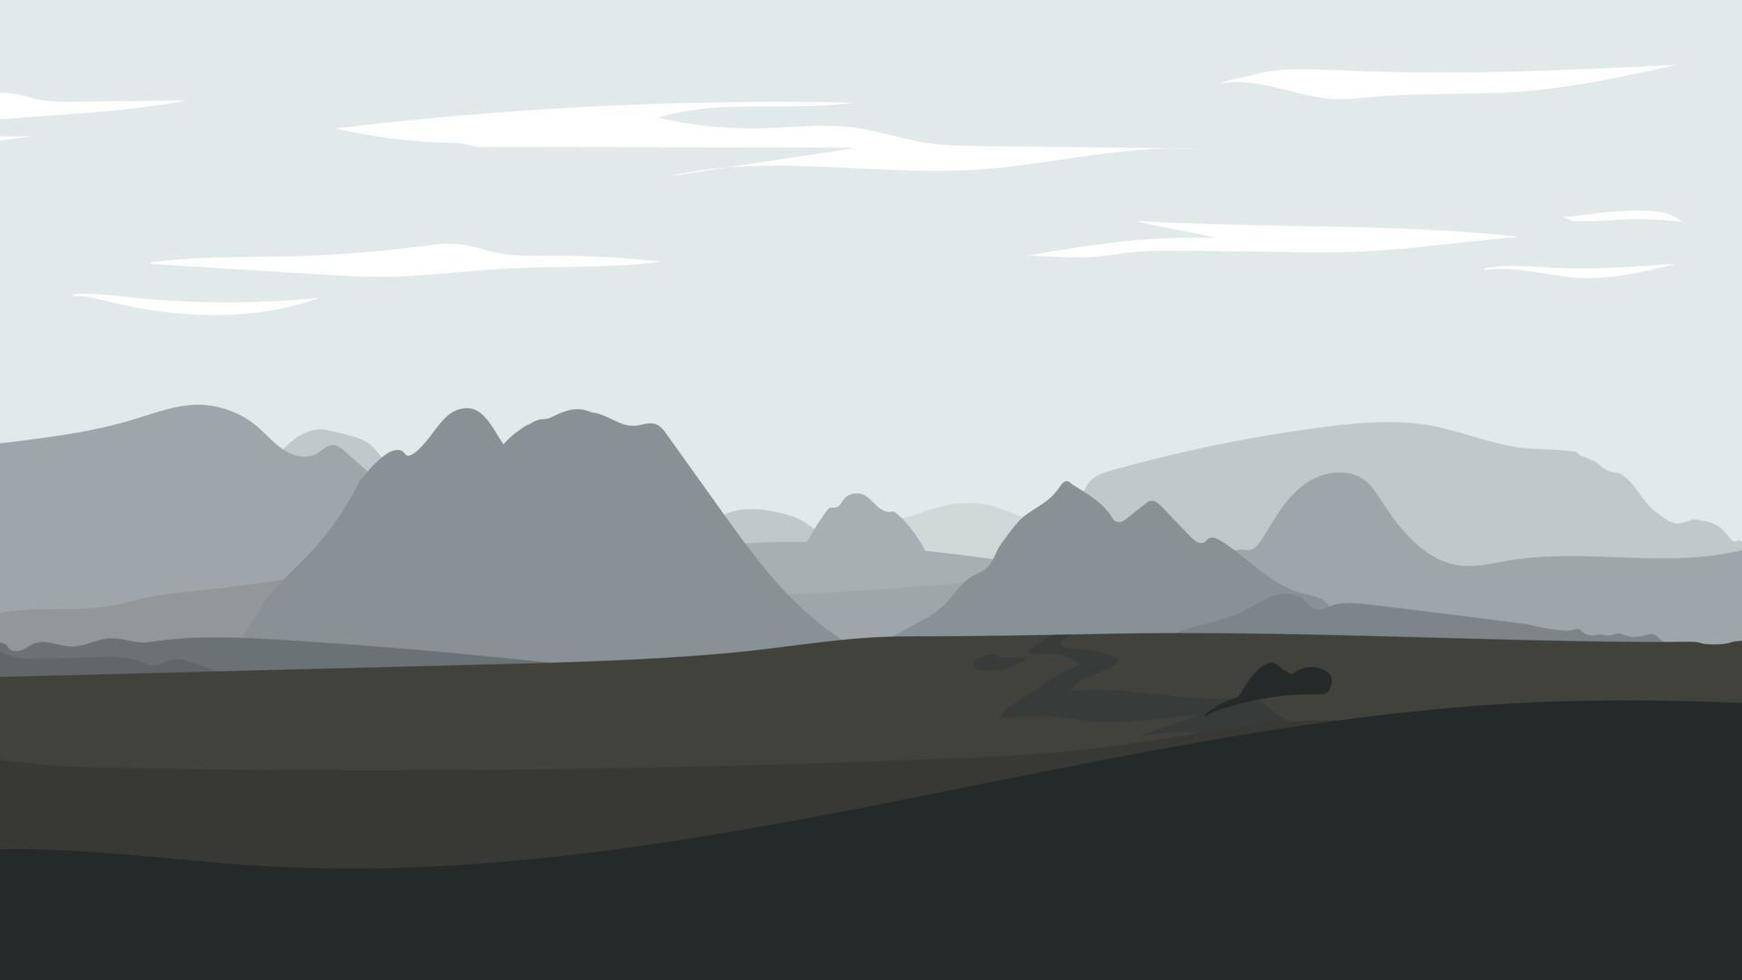 paisagem com deserto com rochas e montanhas. vetor